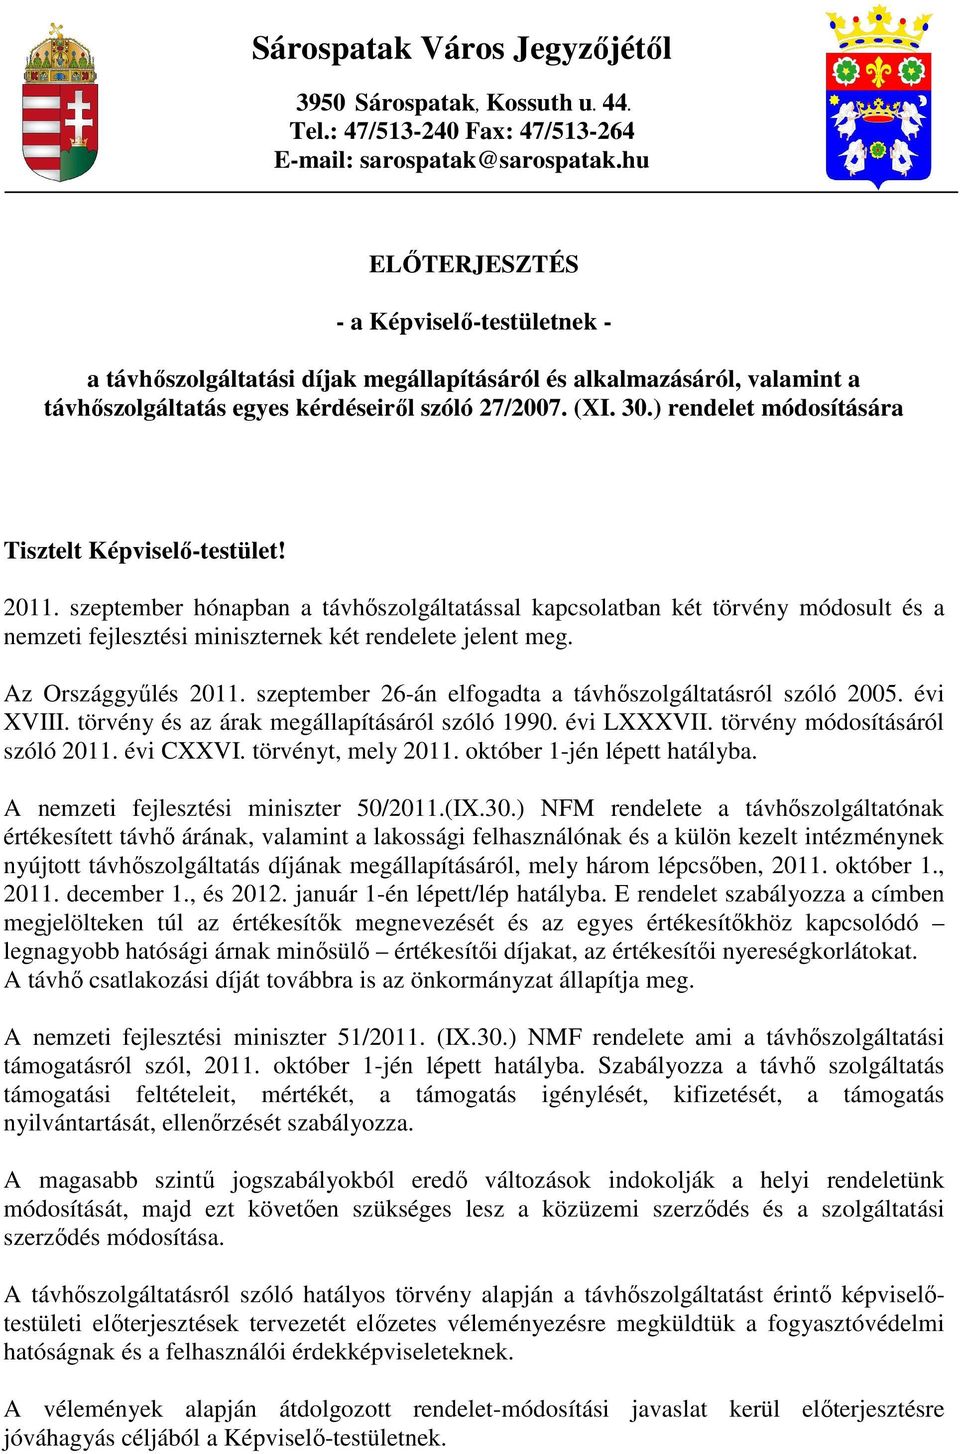 ) rendelet módosítására Tisztelt Képviselı-testület! 2011. szeptember hónapban a távhıszolgáltatással kapcsolatban két törvény módosult és a nemzeti fejlesztési miniszternek két rendelete jelent meg.